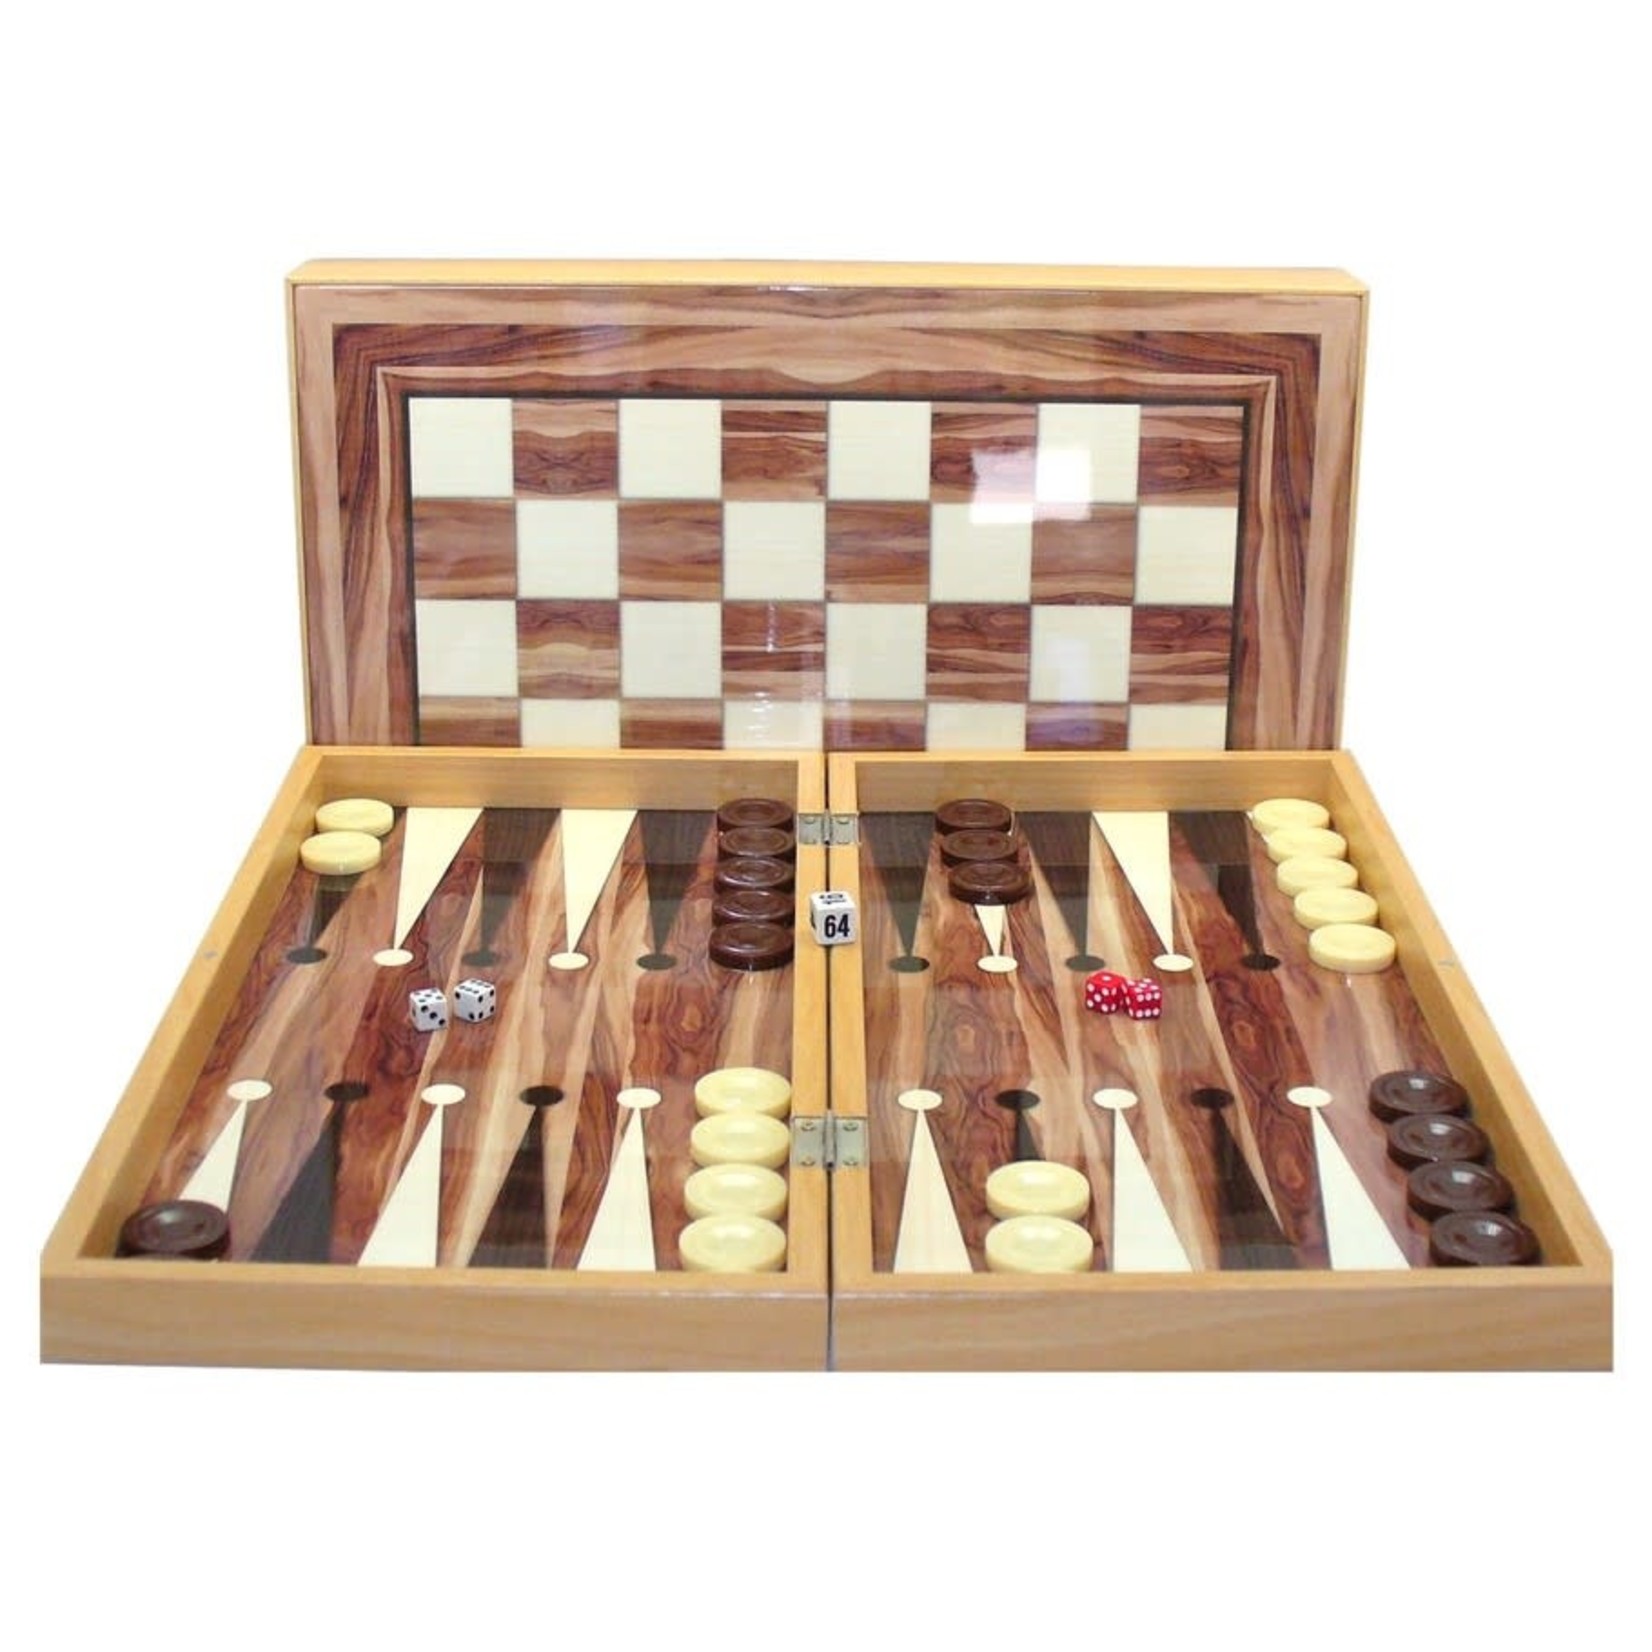 Worldwise Imports Yenigun Backgammon